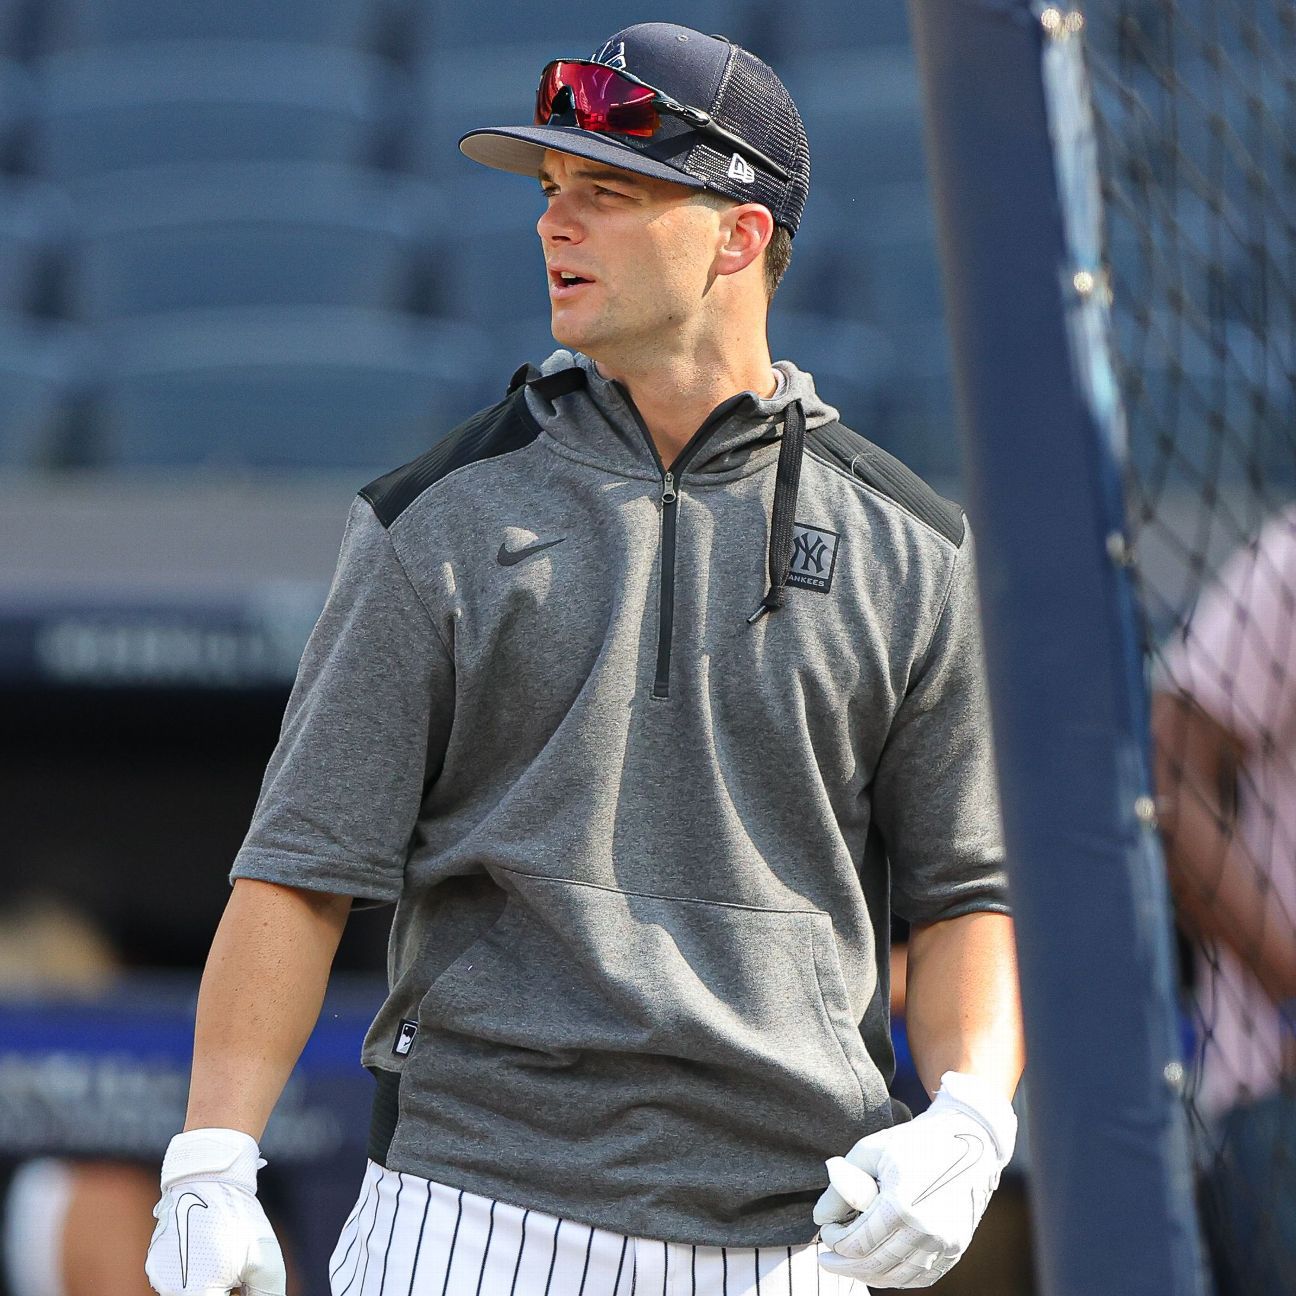 Andrew Benintendi schließt sich den New York Yankees an, bereit, für den ehemaligen Rivalen anzutreten